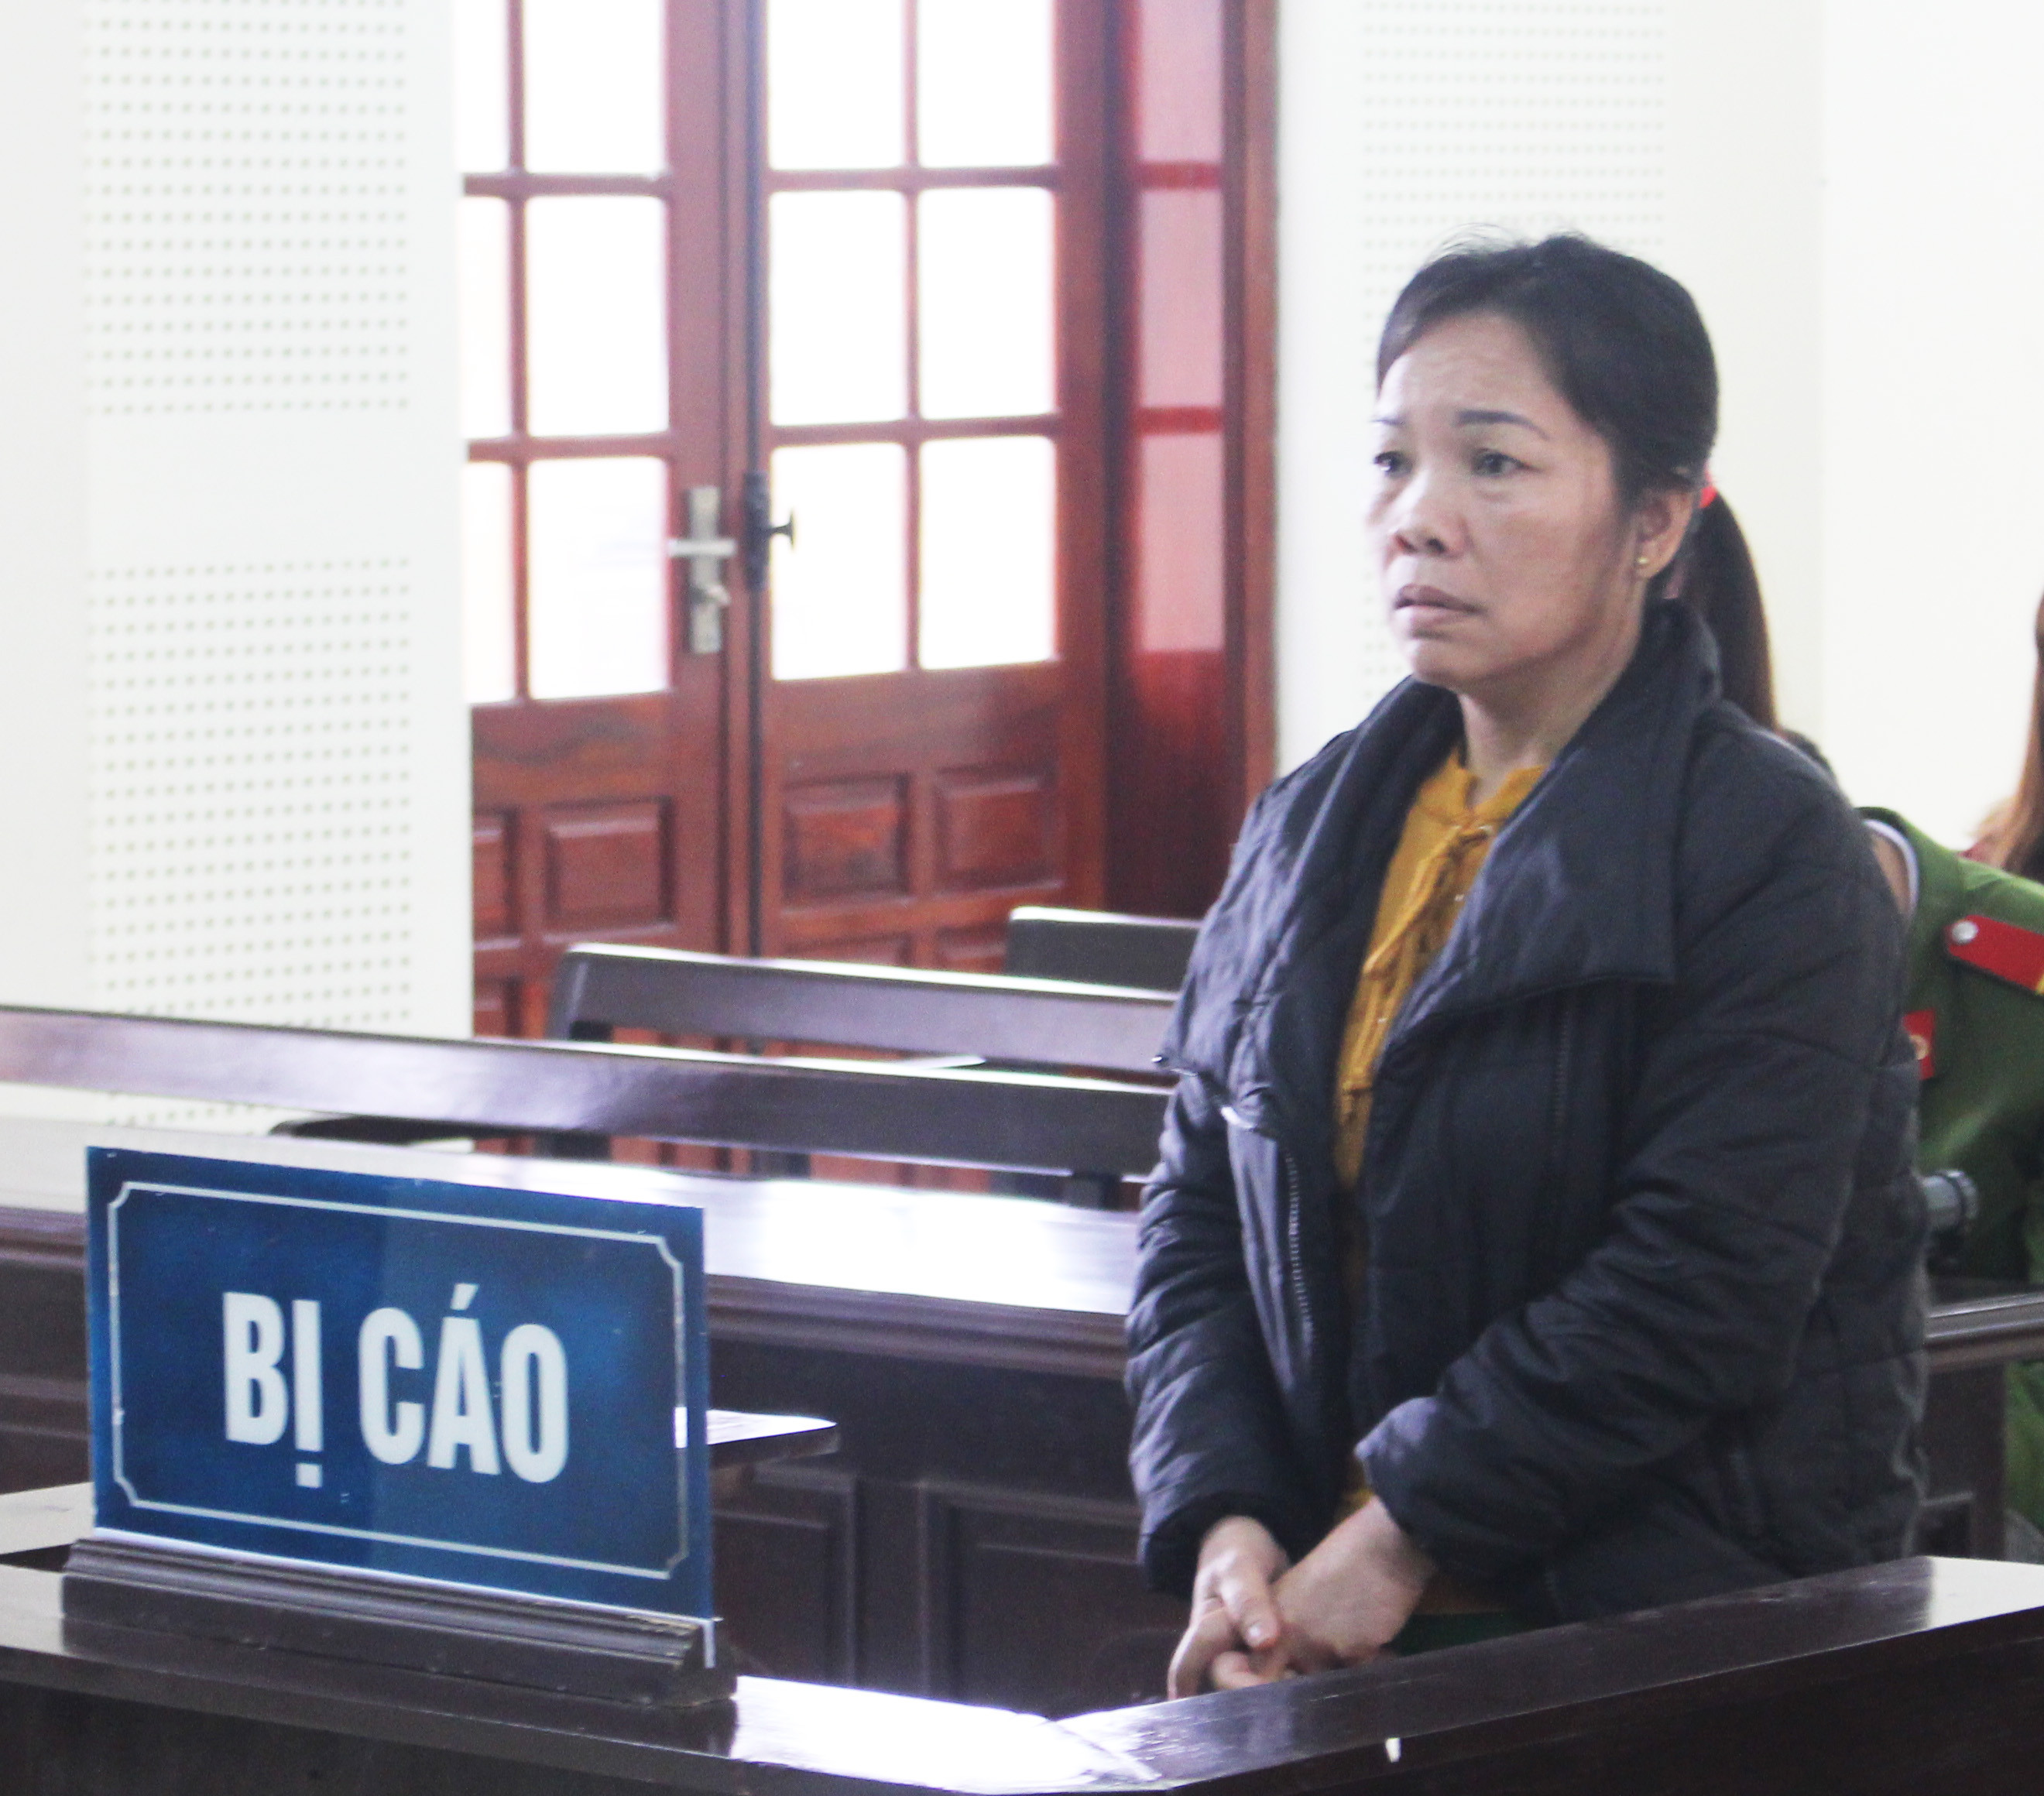 Bị cáo Nguyễn Thị Út Tha trước tòa. Ảnh: Phương Thảo